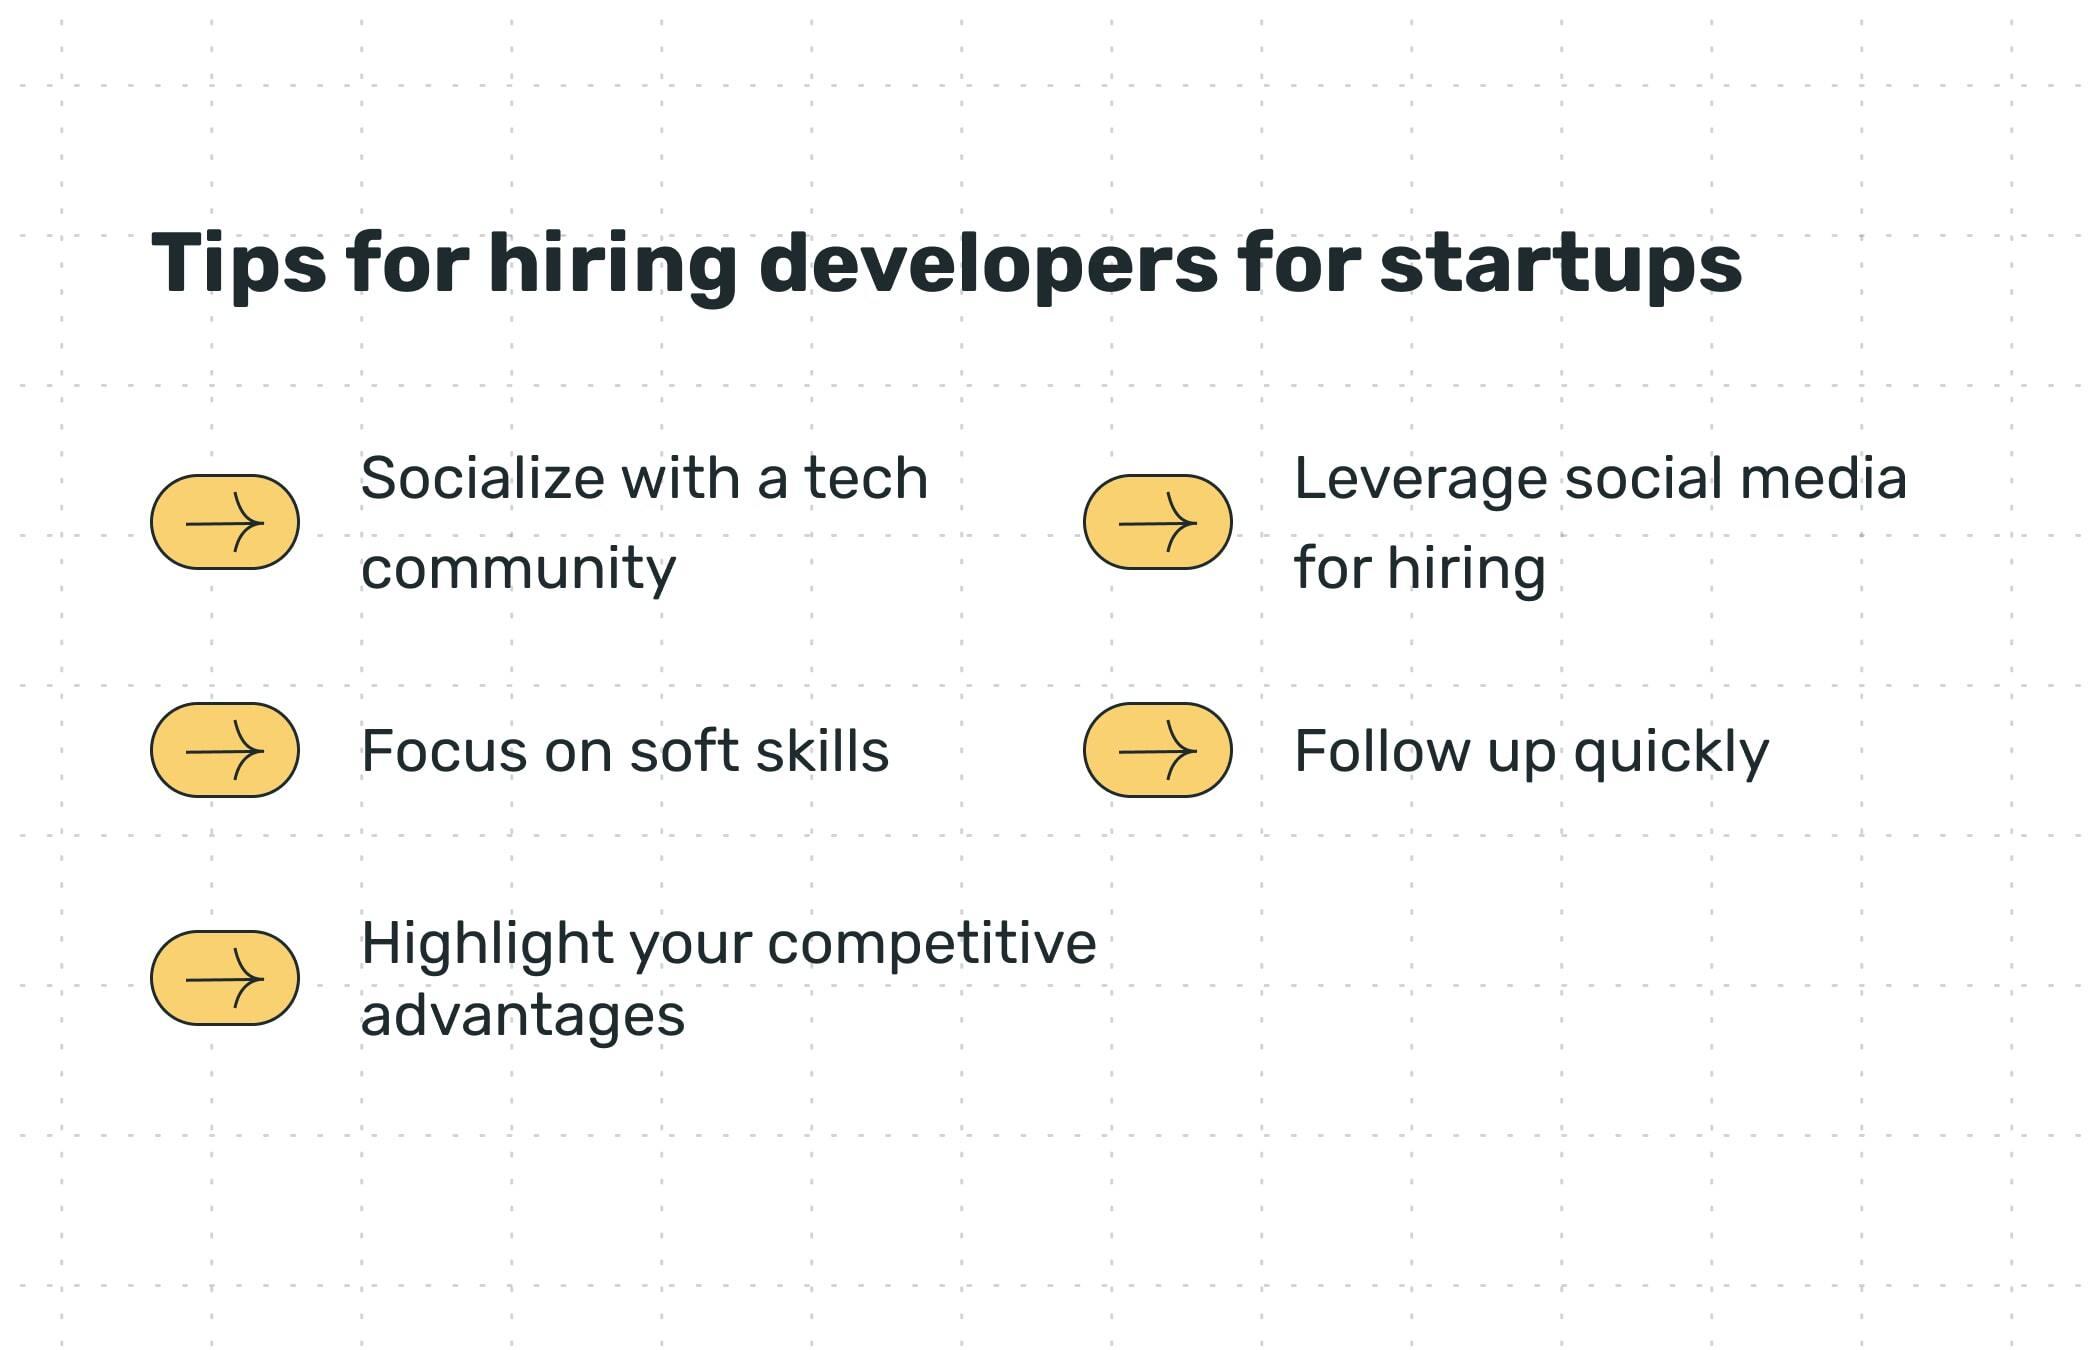 Tips for hiring developers for startups